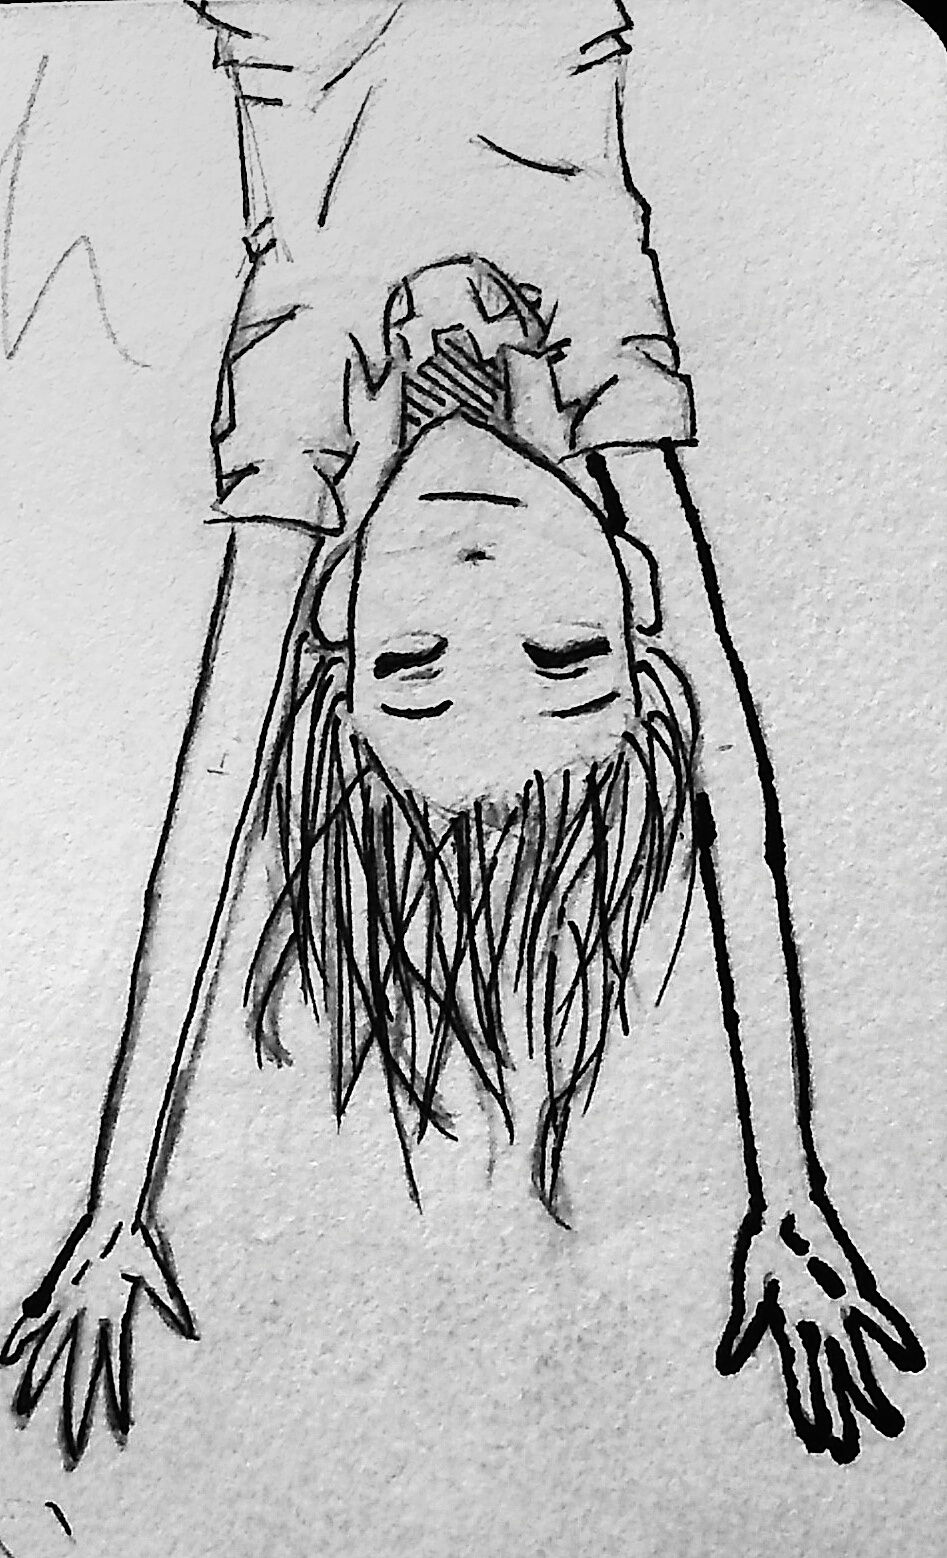 Girl Hanging Upside Down by Gutgoat on DeviantArt